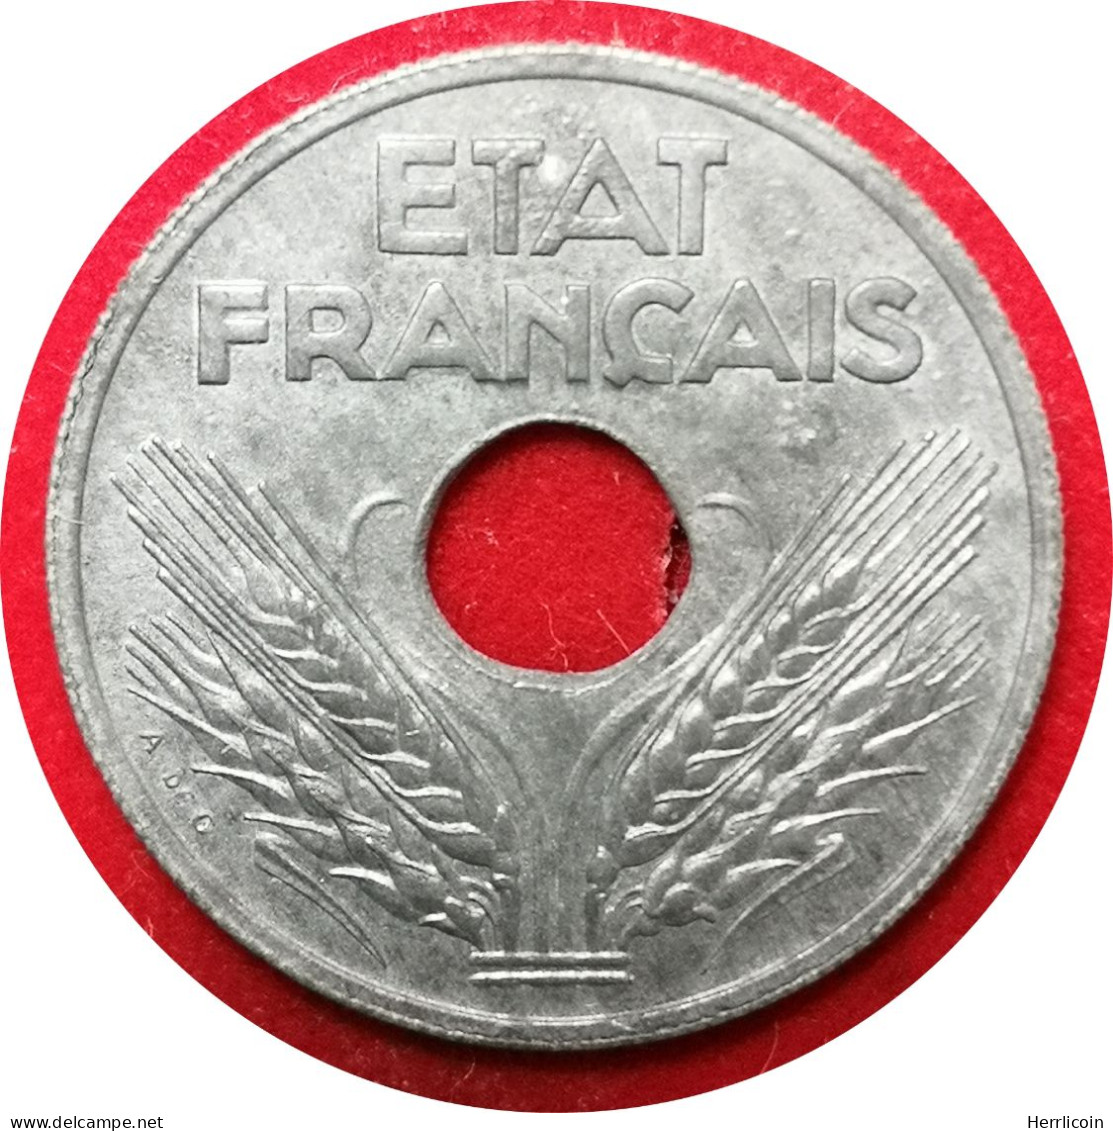 Monnaie France - 1942 - 10 Centimes Etat Français Grand Module - 10 Centimes